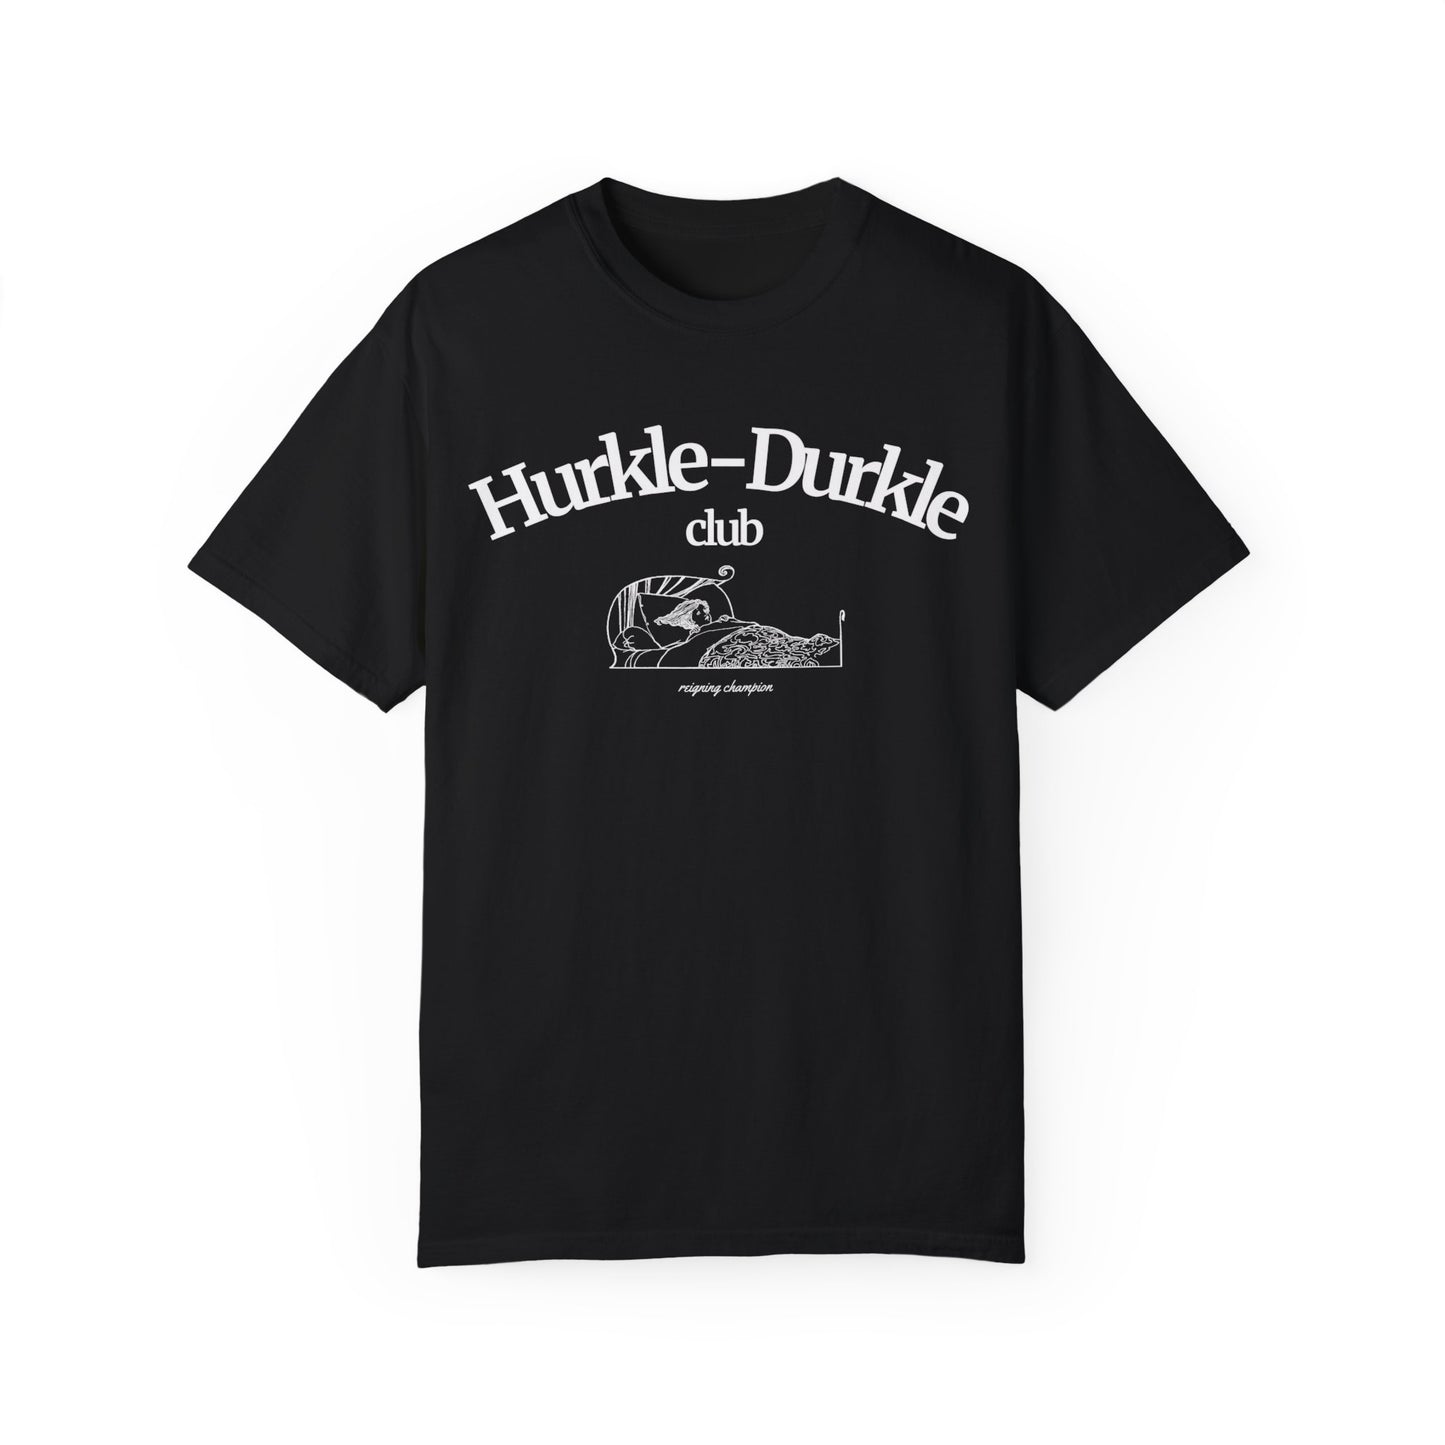 Hurkle Durkle Club Comfort Colors Shirt, Scottish Slang